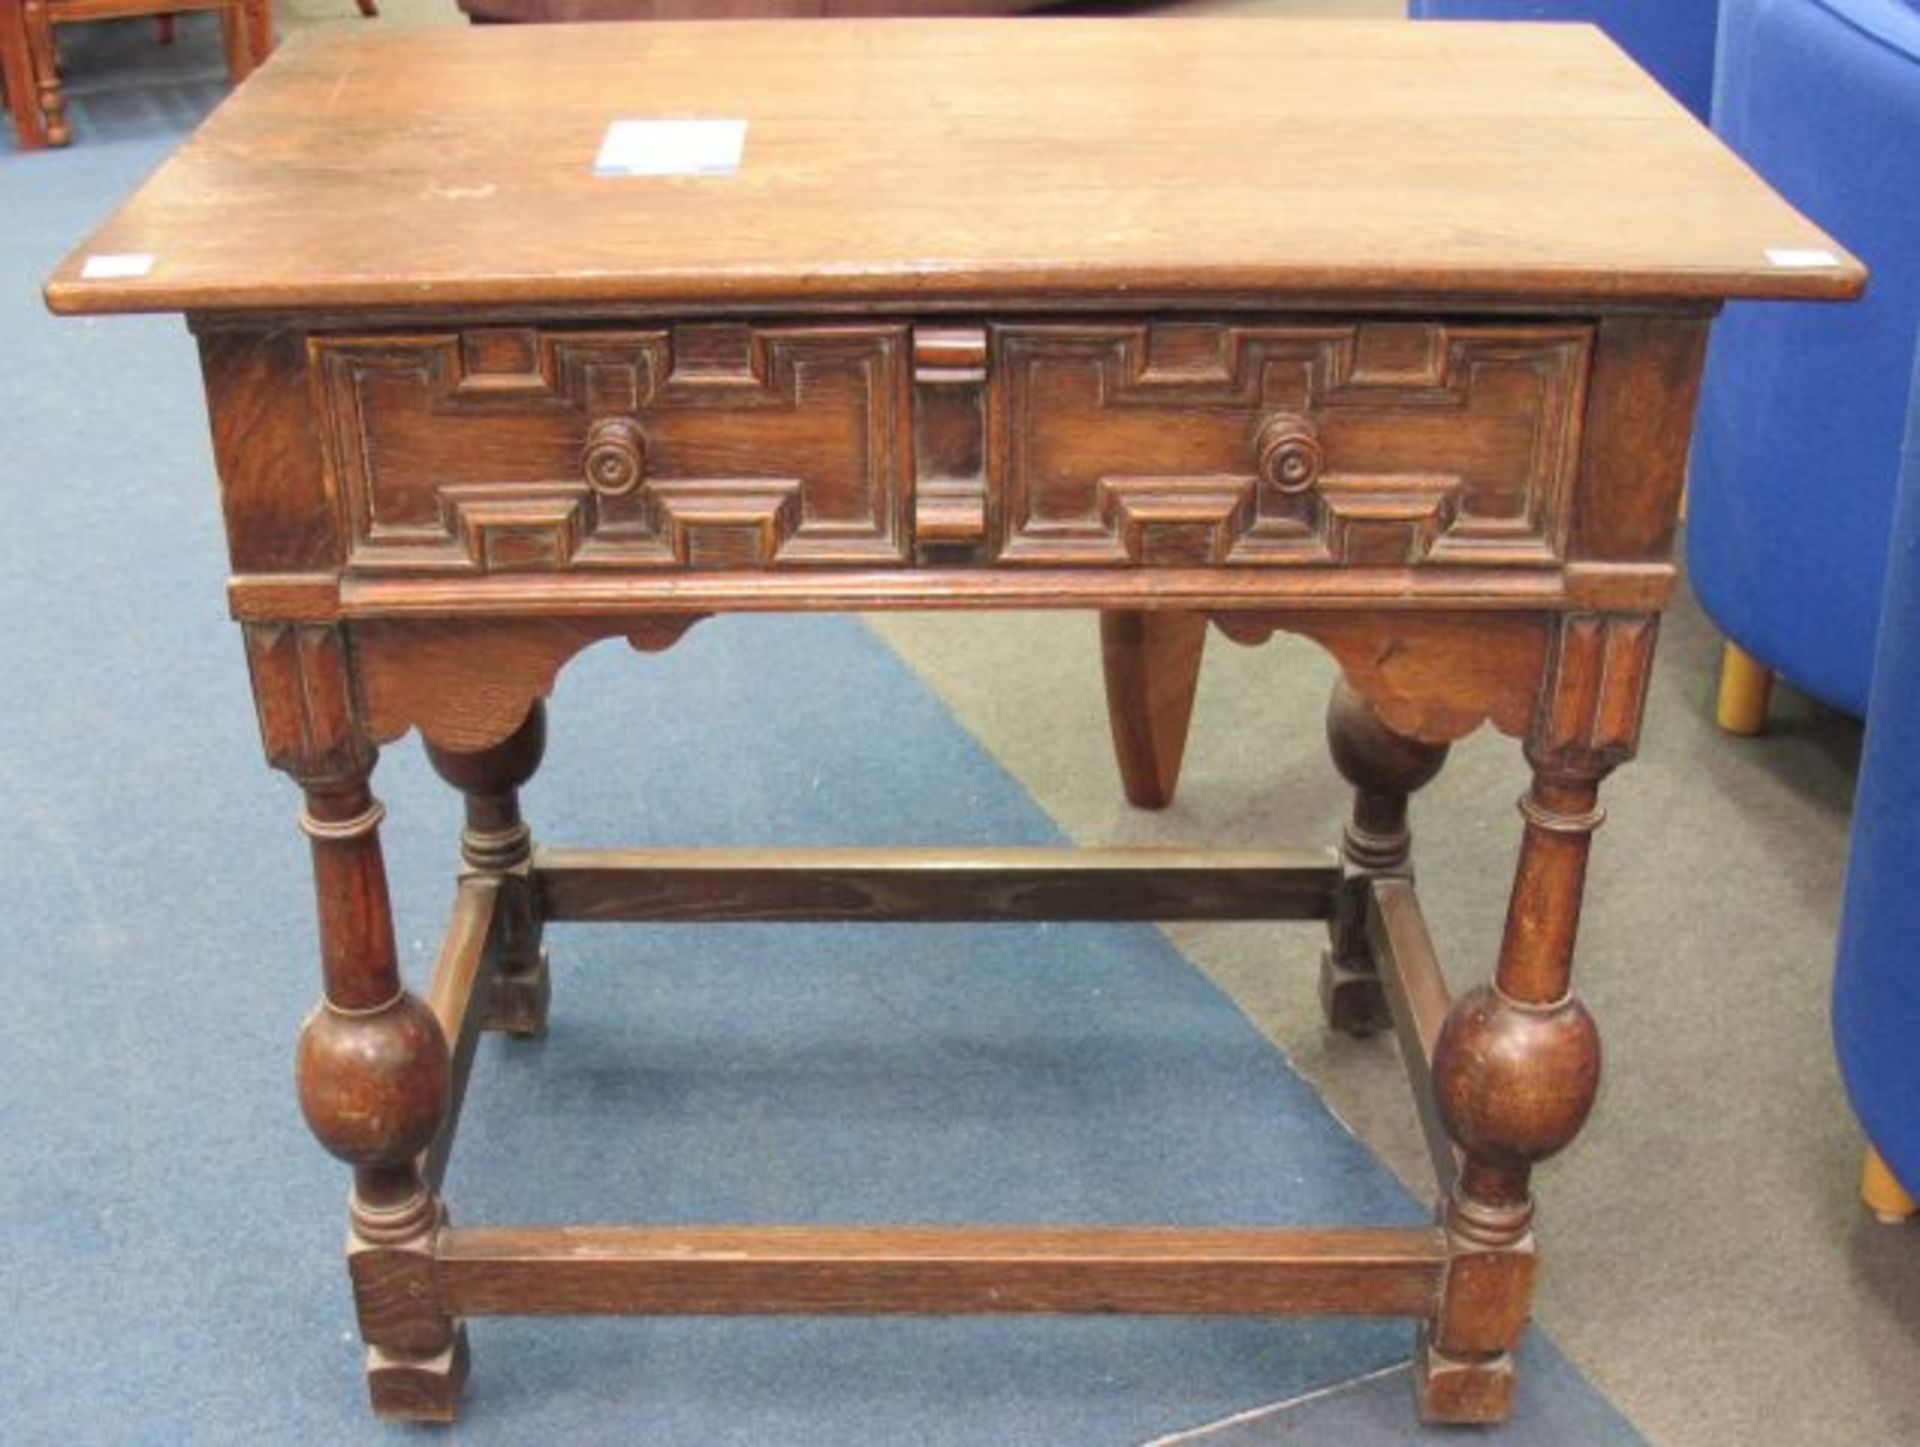 An Oak Side Table with Drawer. W 86cm, D 55cm, H 78cm (est. £50-£80)